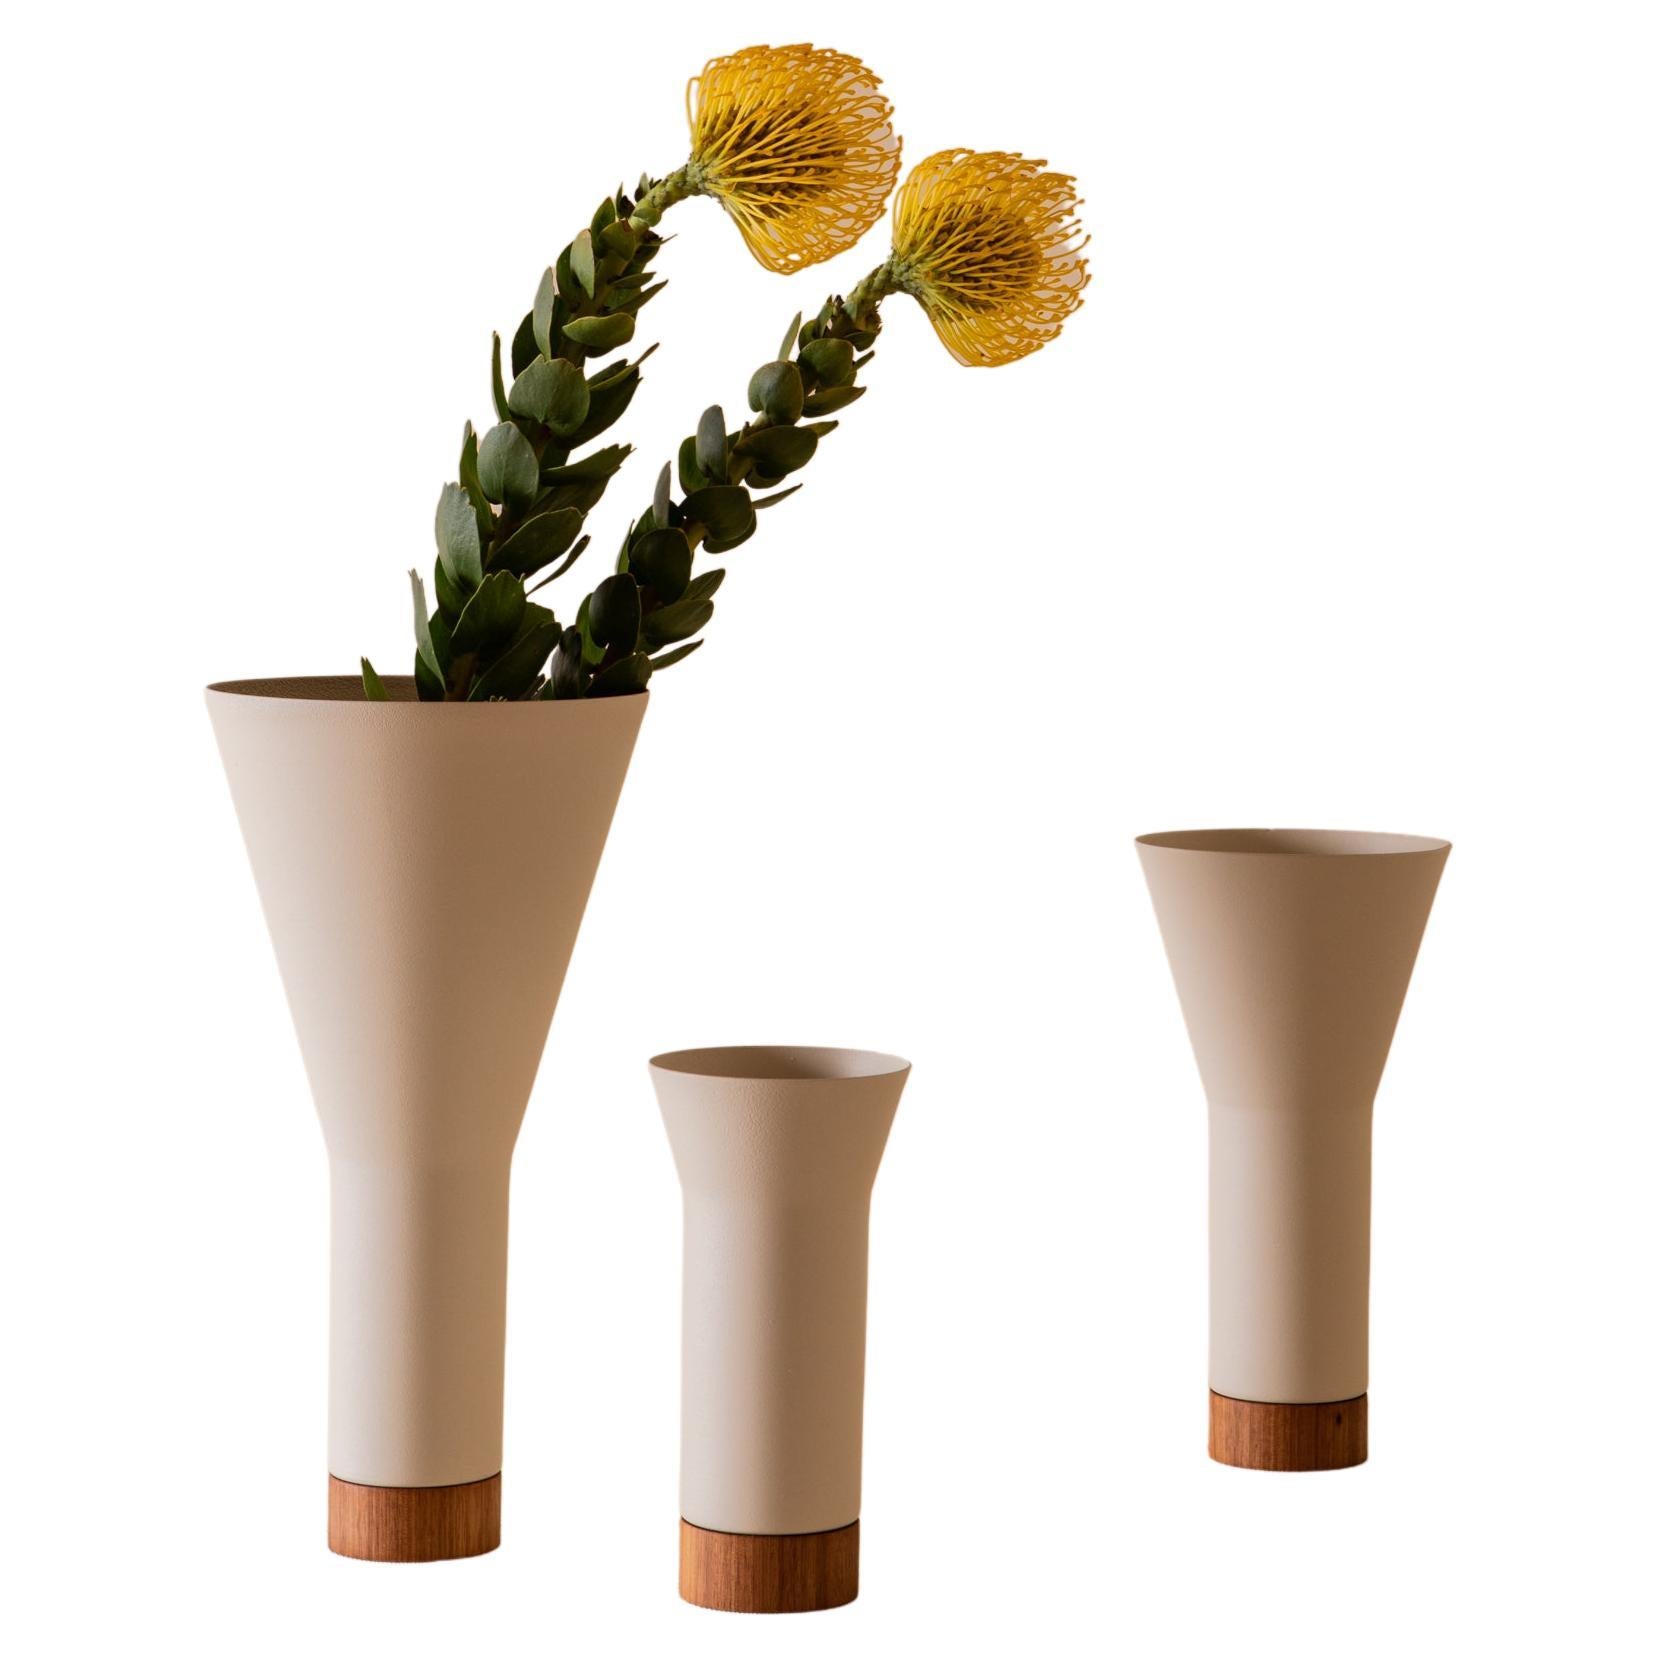 Farol Vases (Set of 3) by Estúdio Dentro, Brazilian Contemporary Design